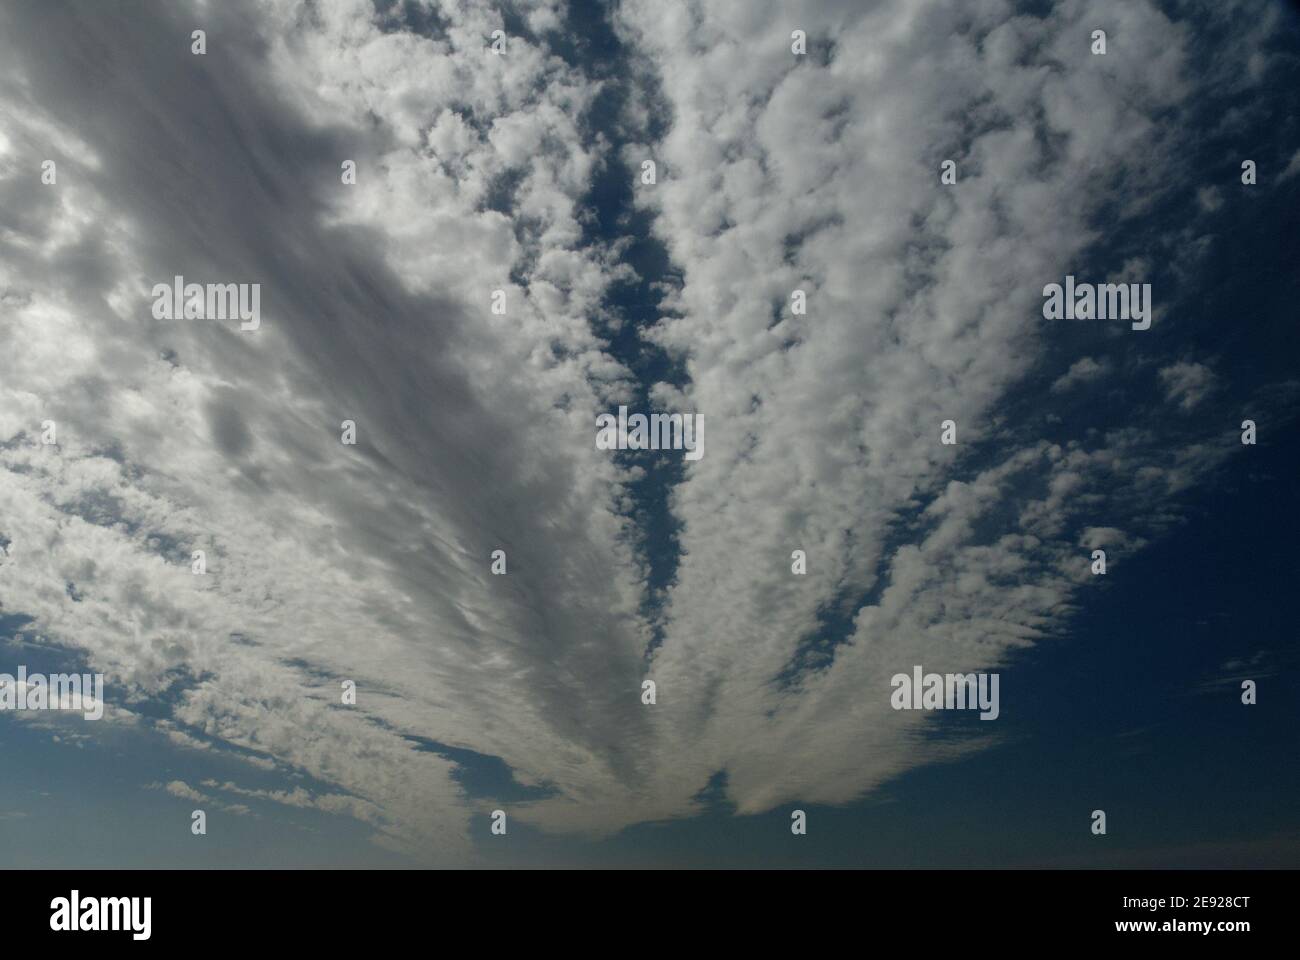 Dramatische White Cloud Streaming Hintergründe. Dies sind schöne Hintergrundbilder mit einzigartigen Wolkenformationen. Da es sich um Cloud-Streams handelt, unterscheiden sie sich. Stockfoto